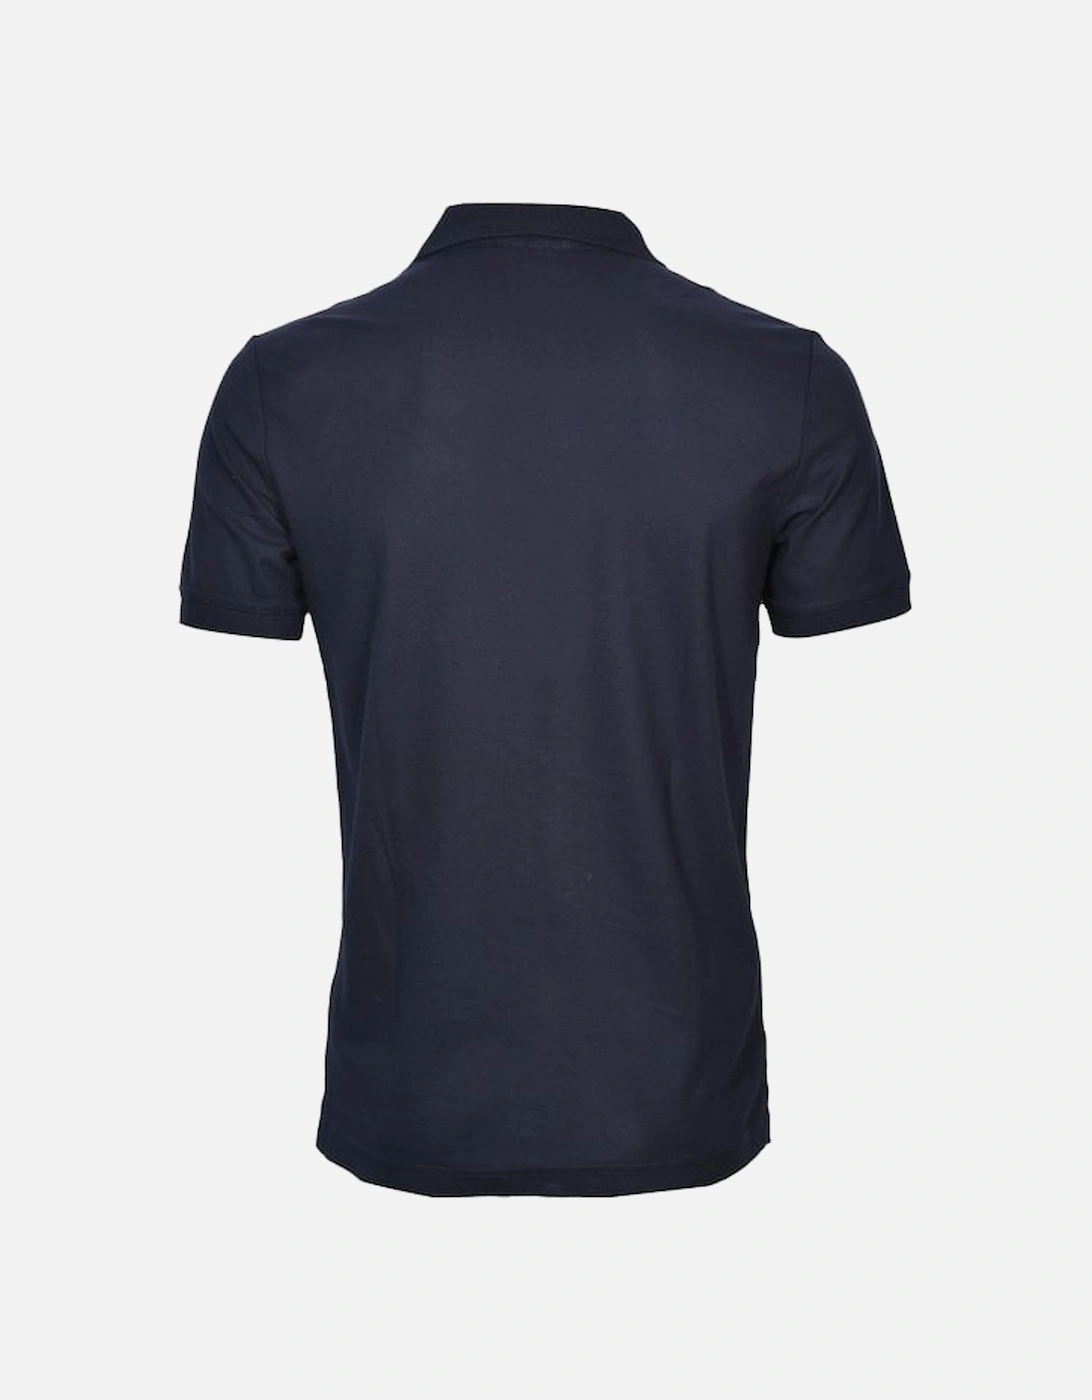 Embroidered Logo Refined Pique Cotton Polo Shirt, Navy